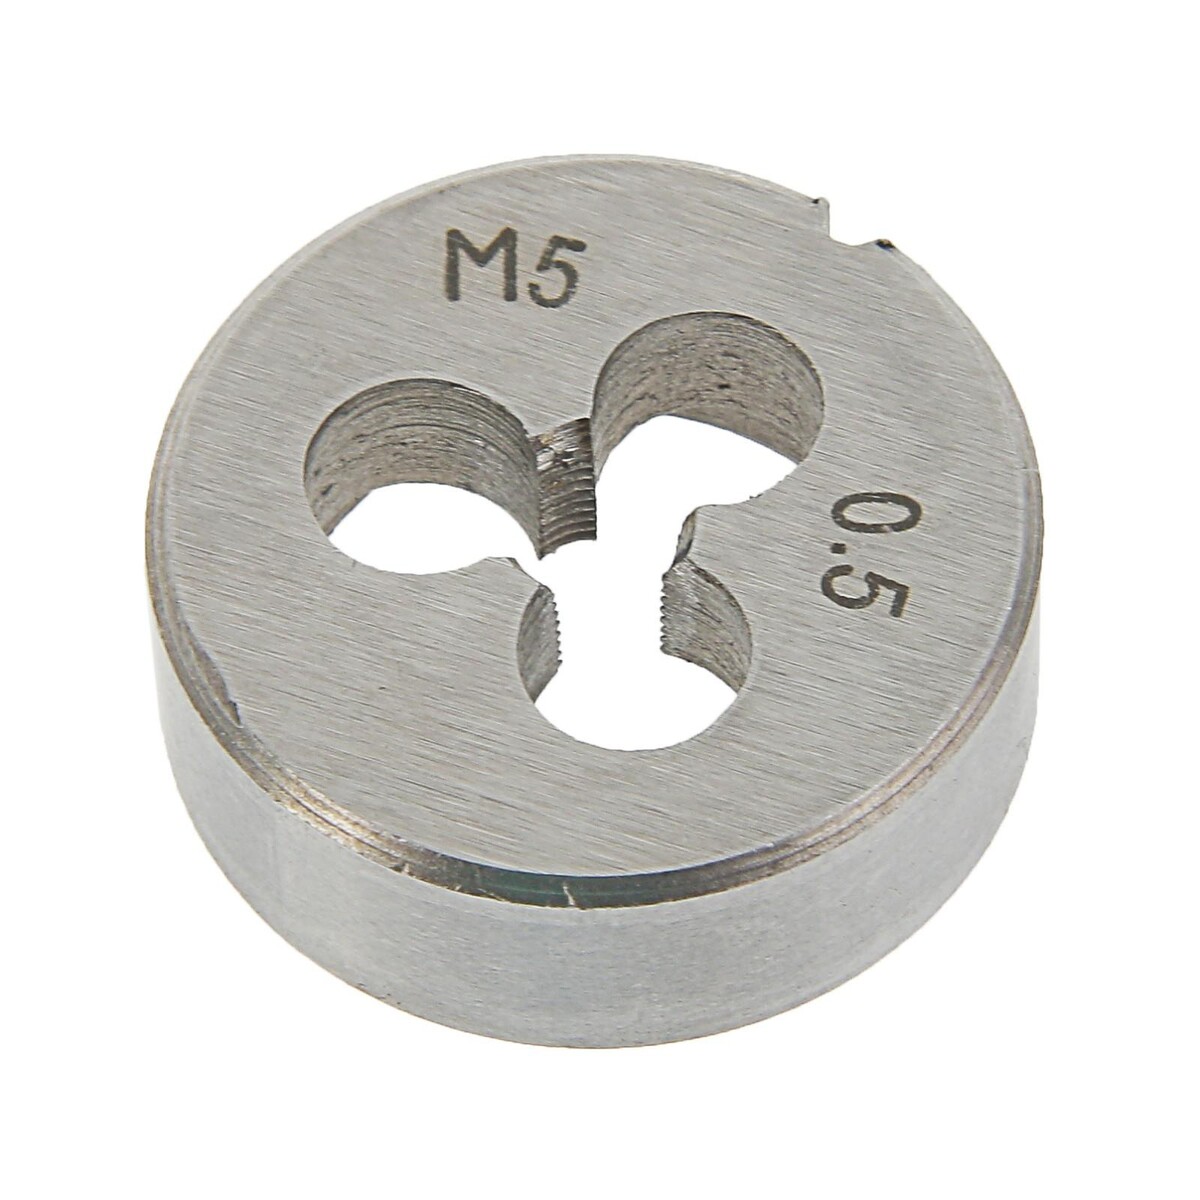 Плашка метрическая тундра, м5 х 0.5 мм плашка метрическая тундра м5 х 0 5 мм